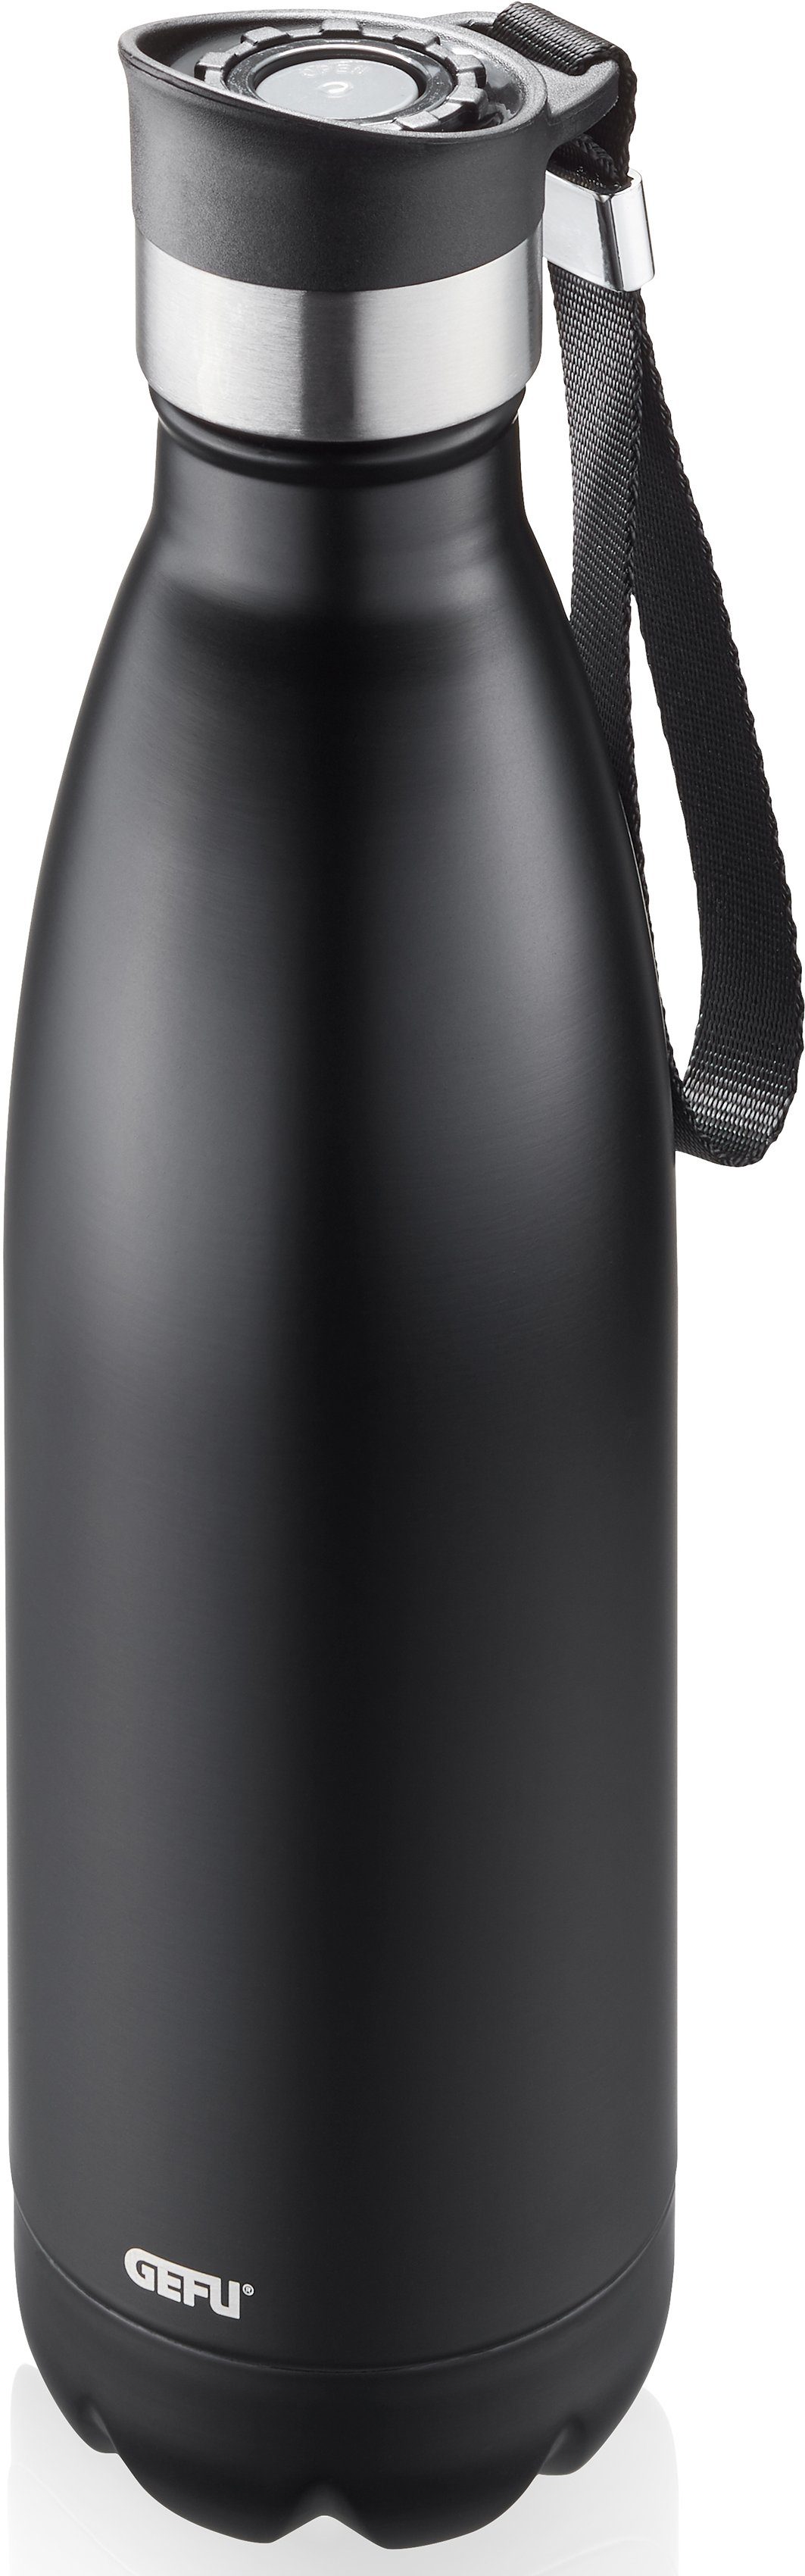 GEFU Thermoflasche OLIMPIO, ideal für kohlensäurehaltige Getränke schwarz